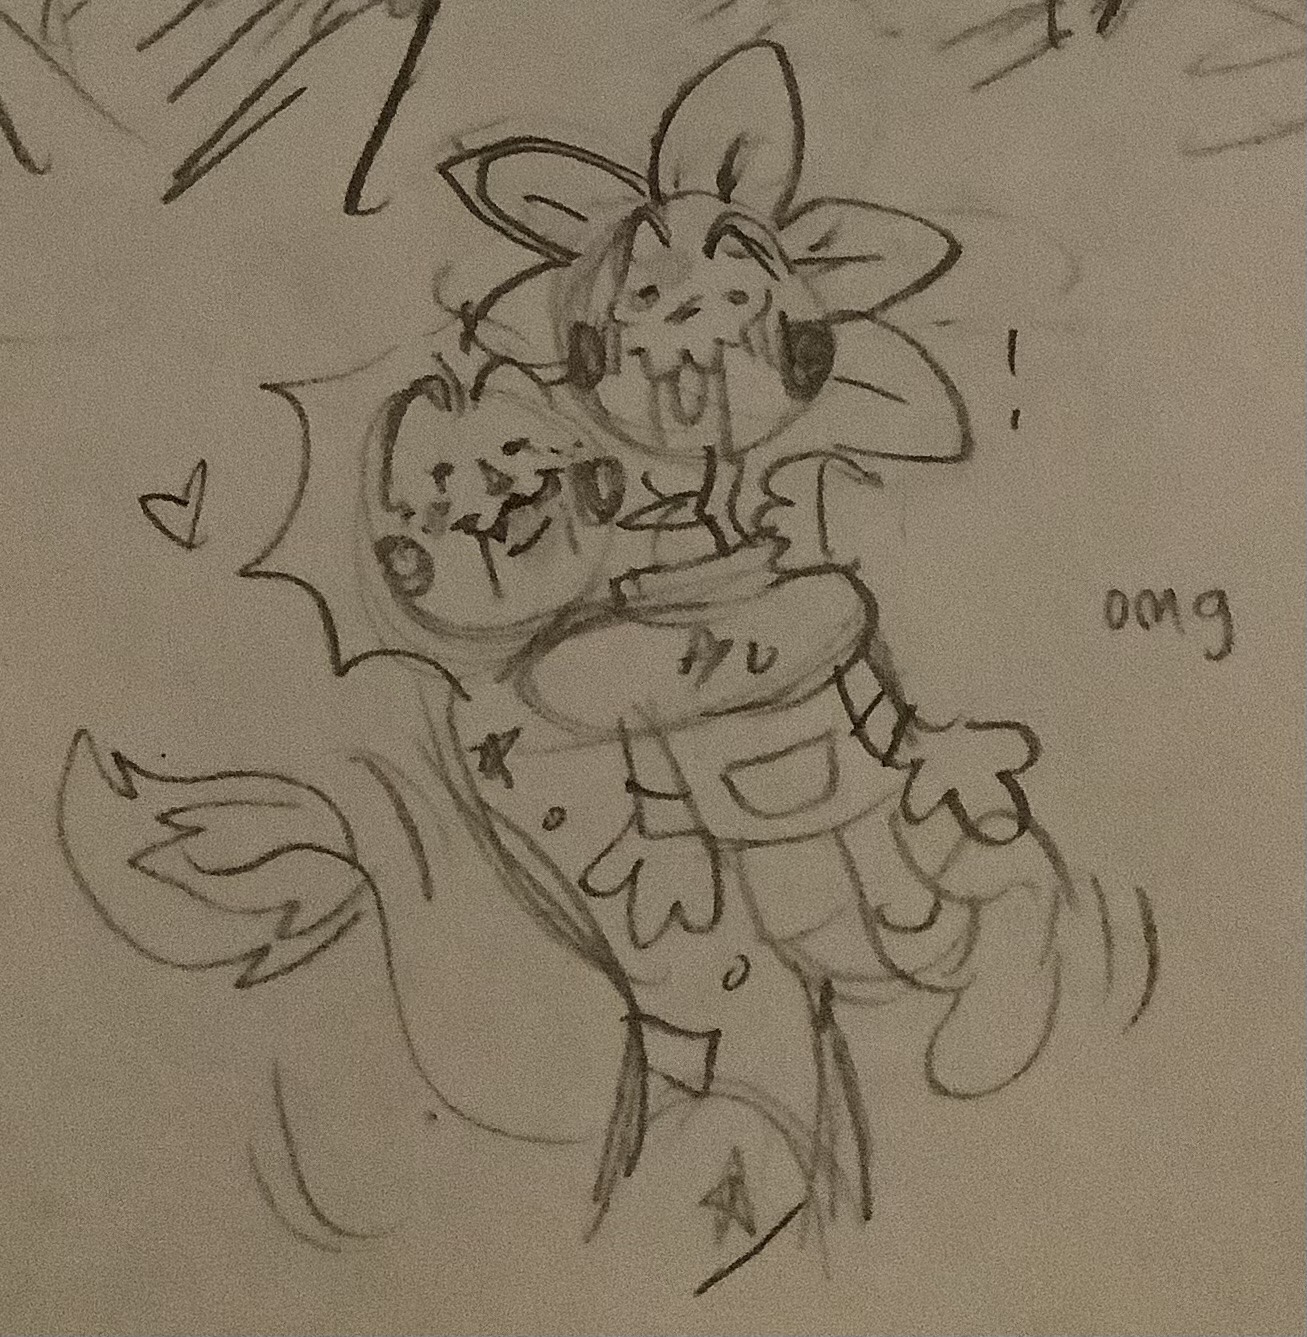 Sunny hugs their friend! (Harmony and Horror)